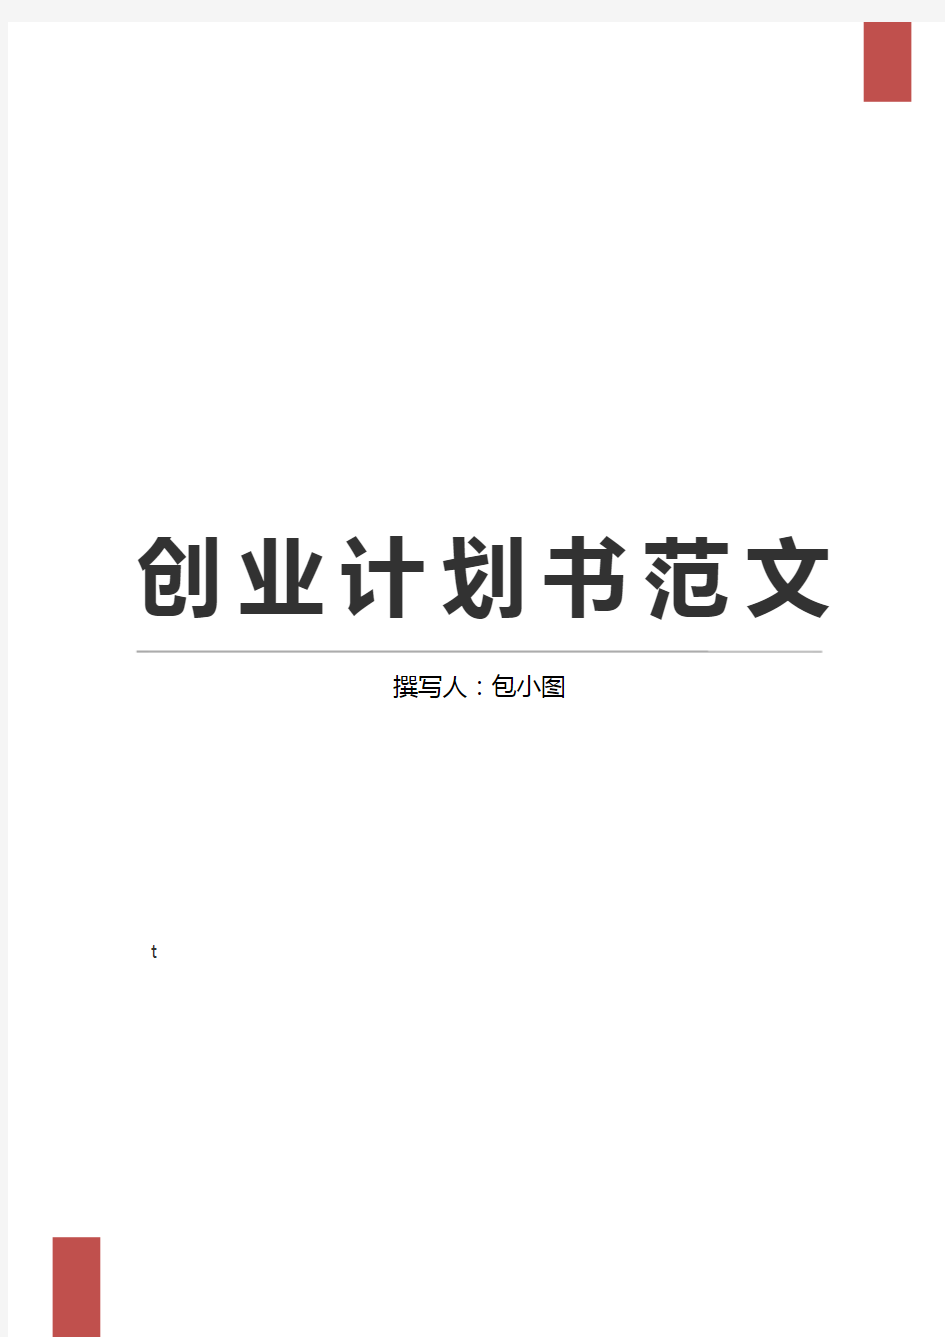 商业计划书word模板 (10)